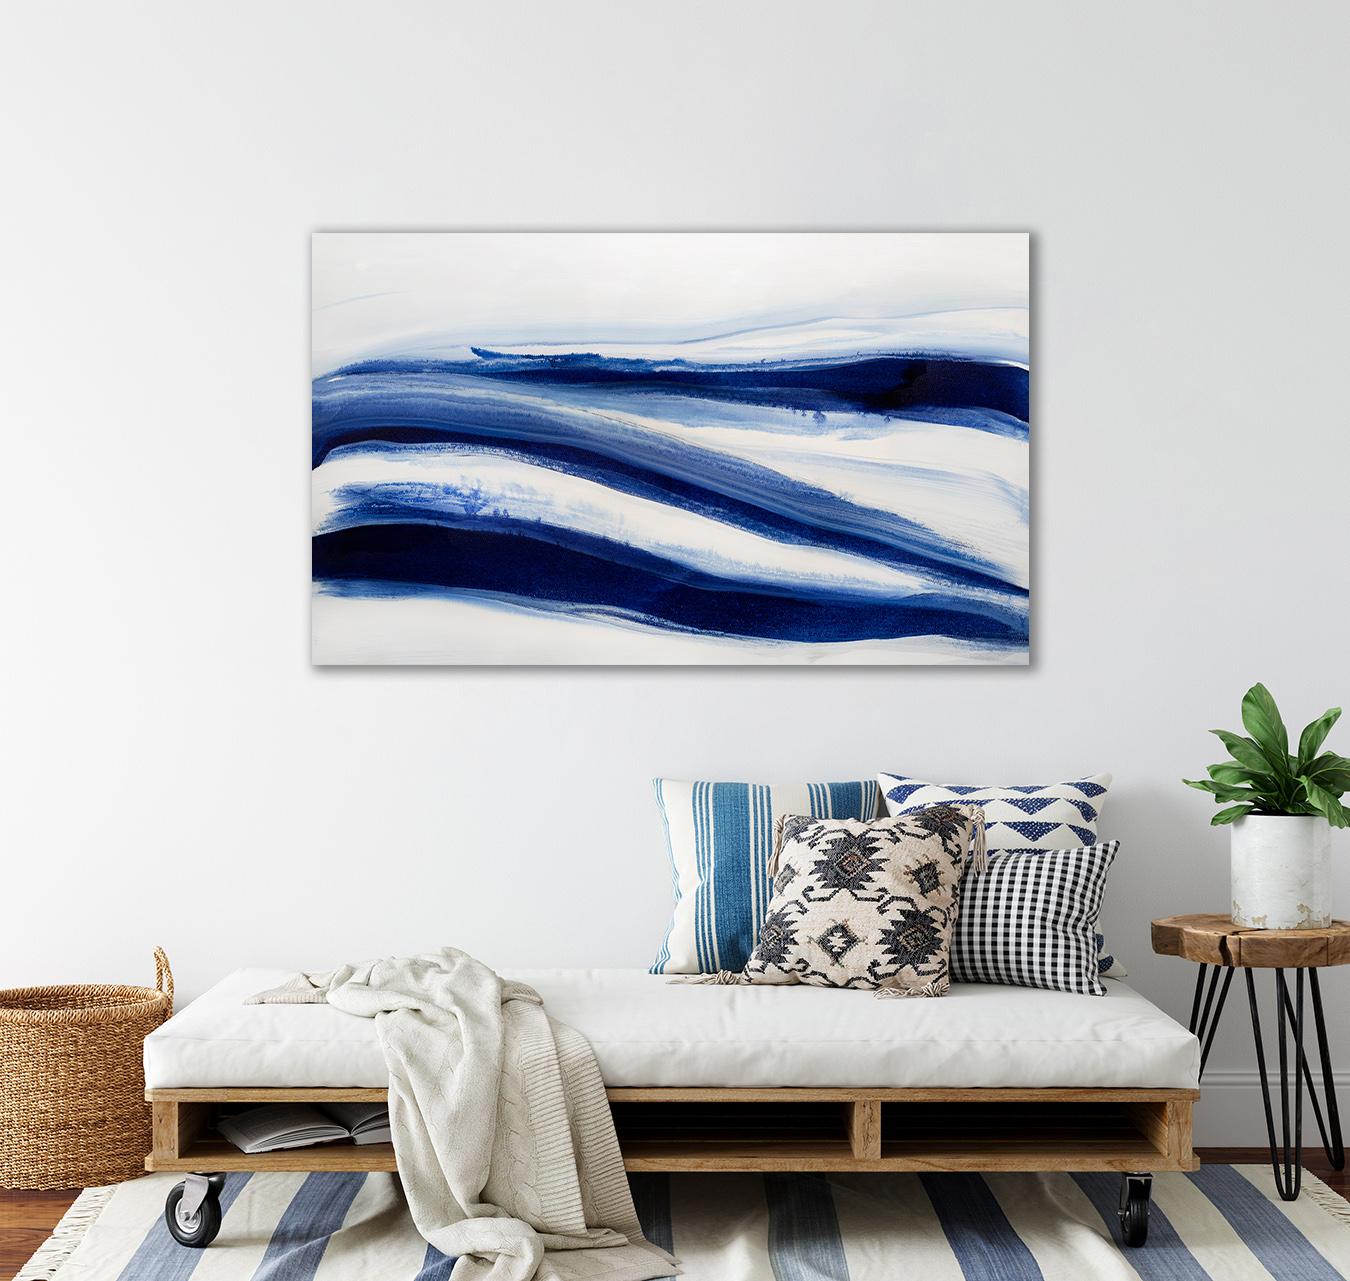 Dieses großformatige abstrakte Gemälde von Teodora Guererra ist in den Farben Blau und Weiß gehalten. Der Künstler mischt tiefblaue Farbtöne zu einer fließenden Komposition, bei der sich blaue Bänder horizontal über die Leinwand erstrecken. Das